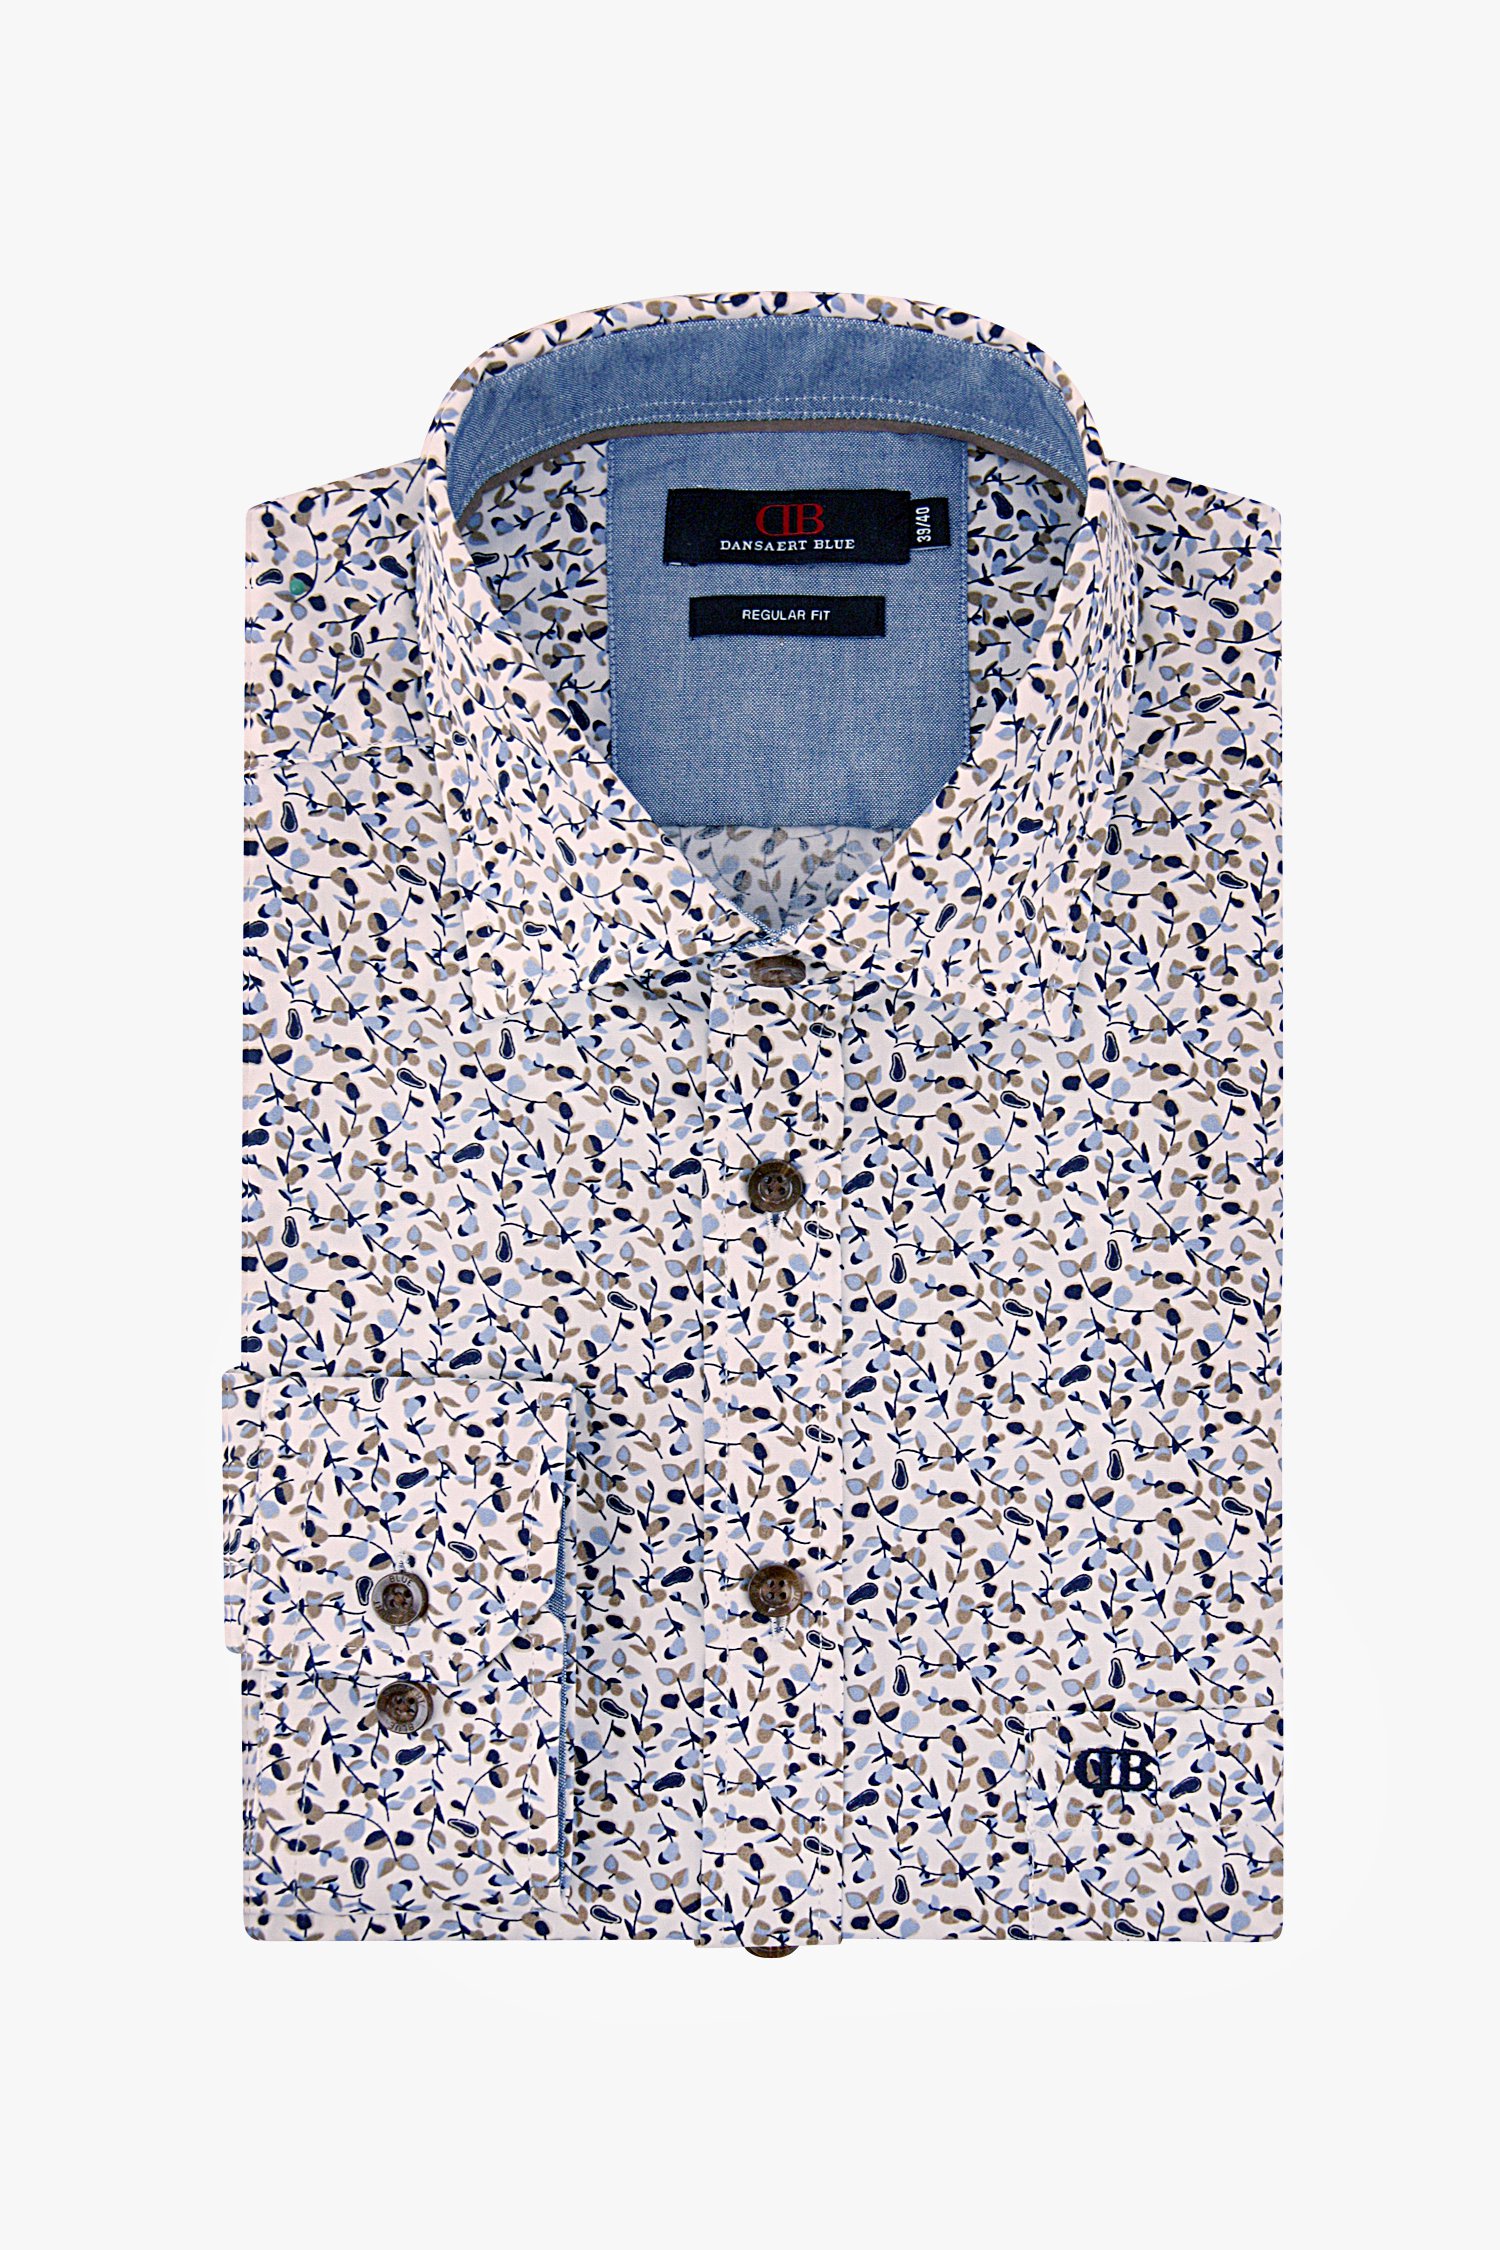 Chemise blanche à imprimé bleu-brun - regular fit de Dansaert Blue pour Hommes